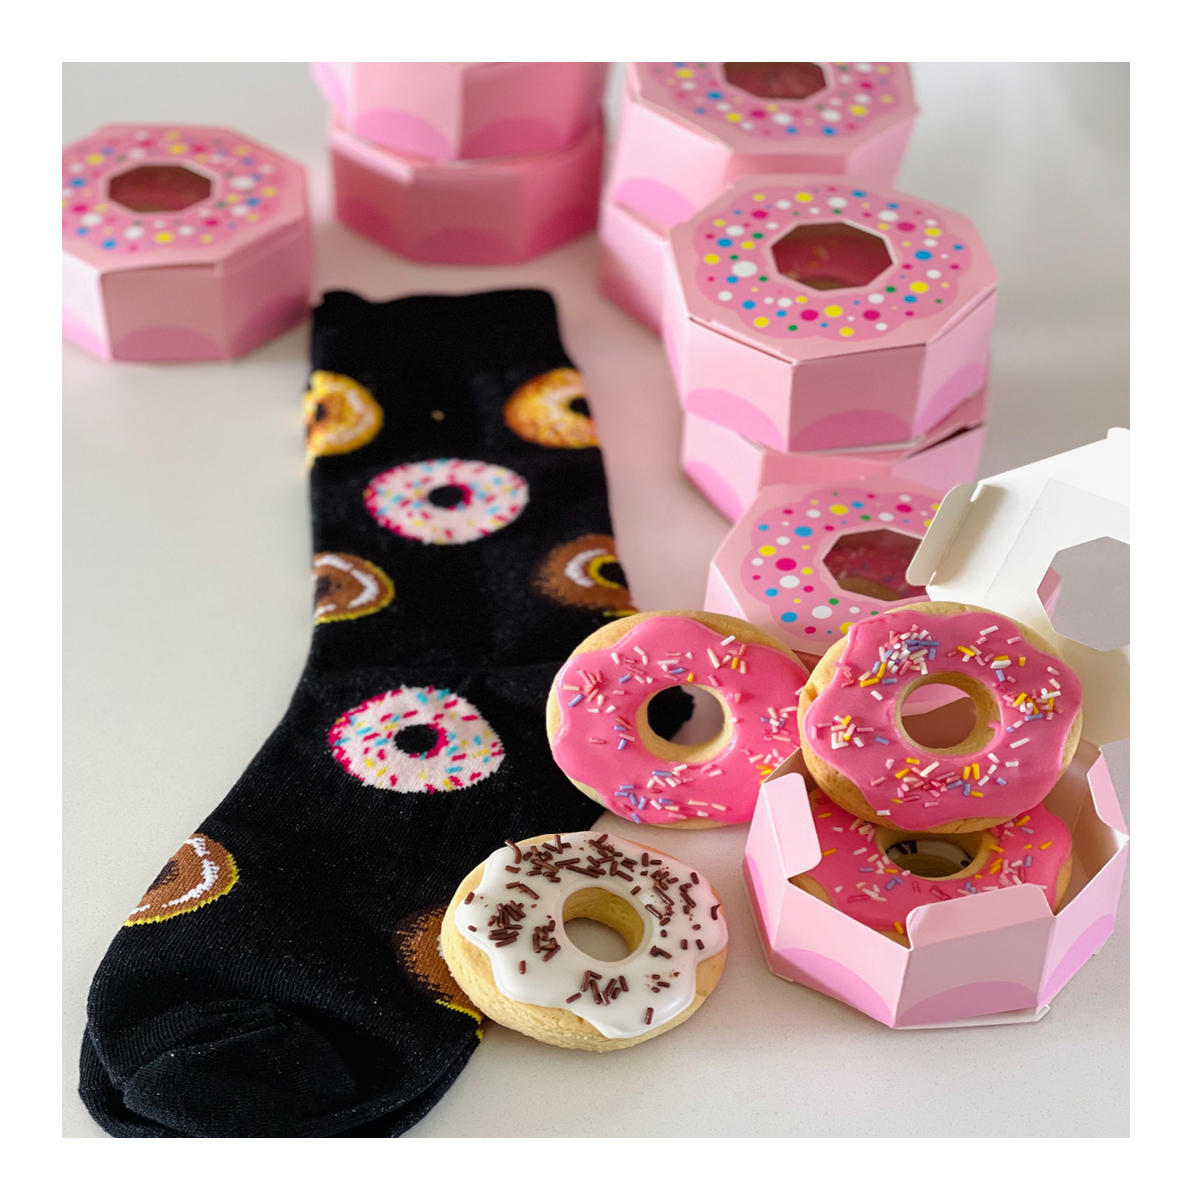 Donut Cookies & Socks!